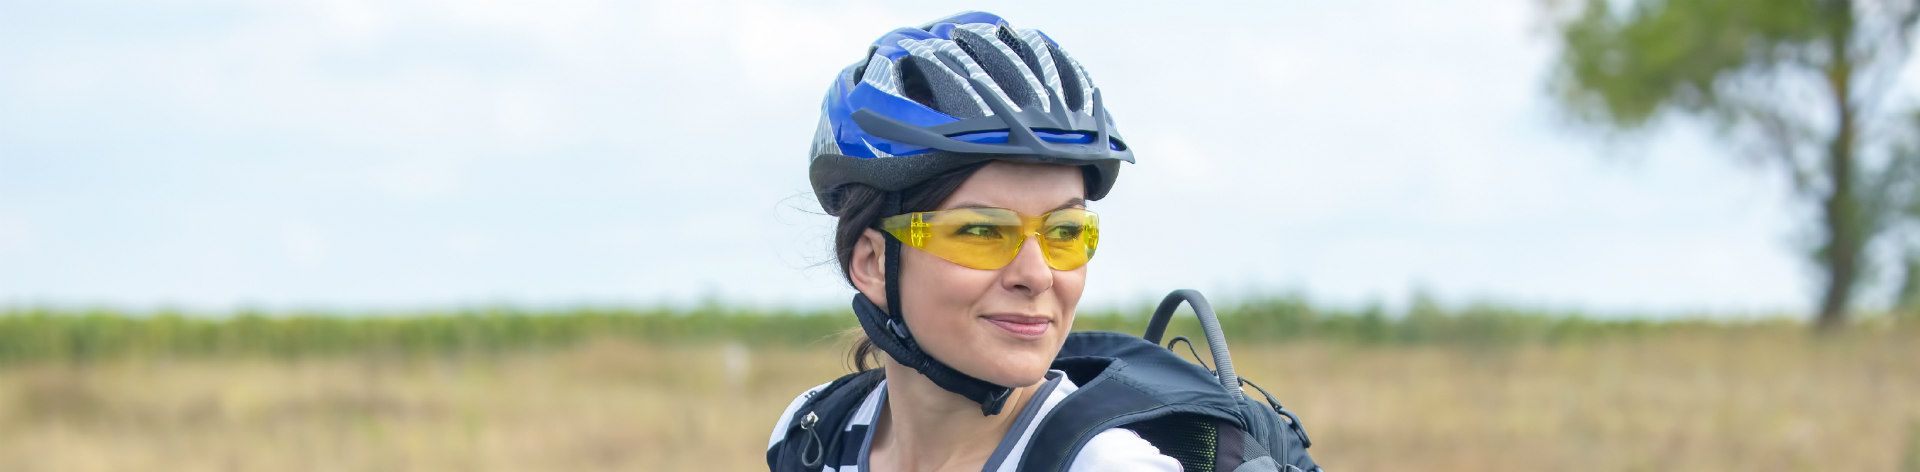 online bike helmets women